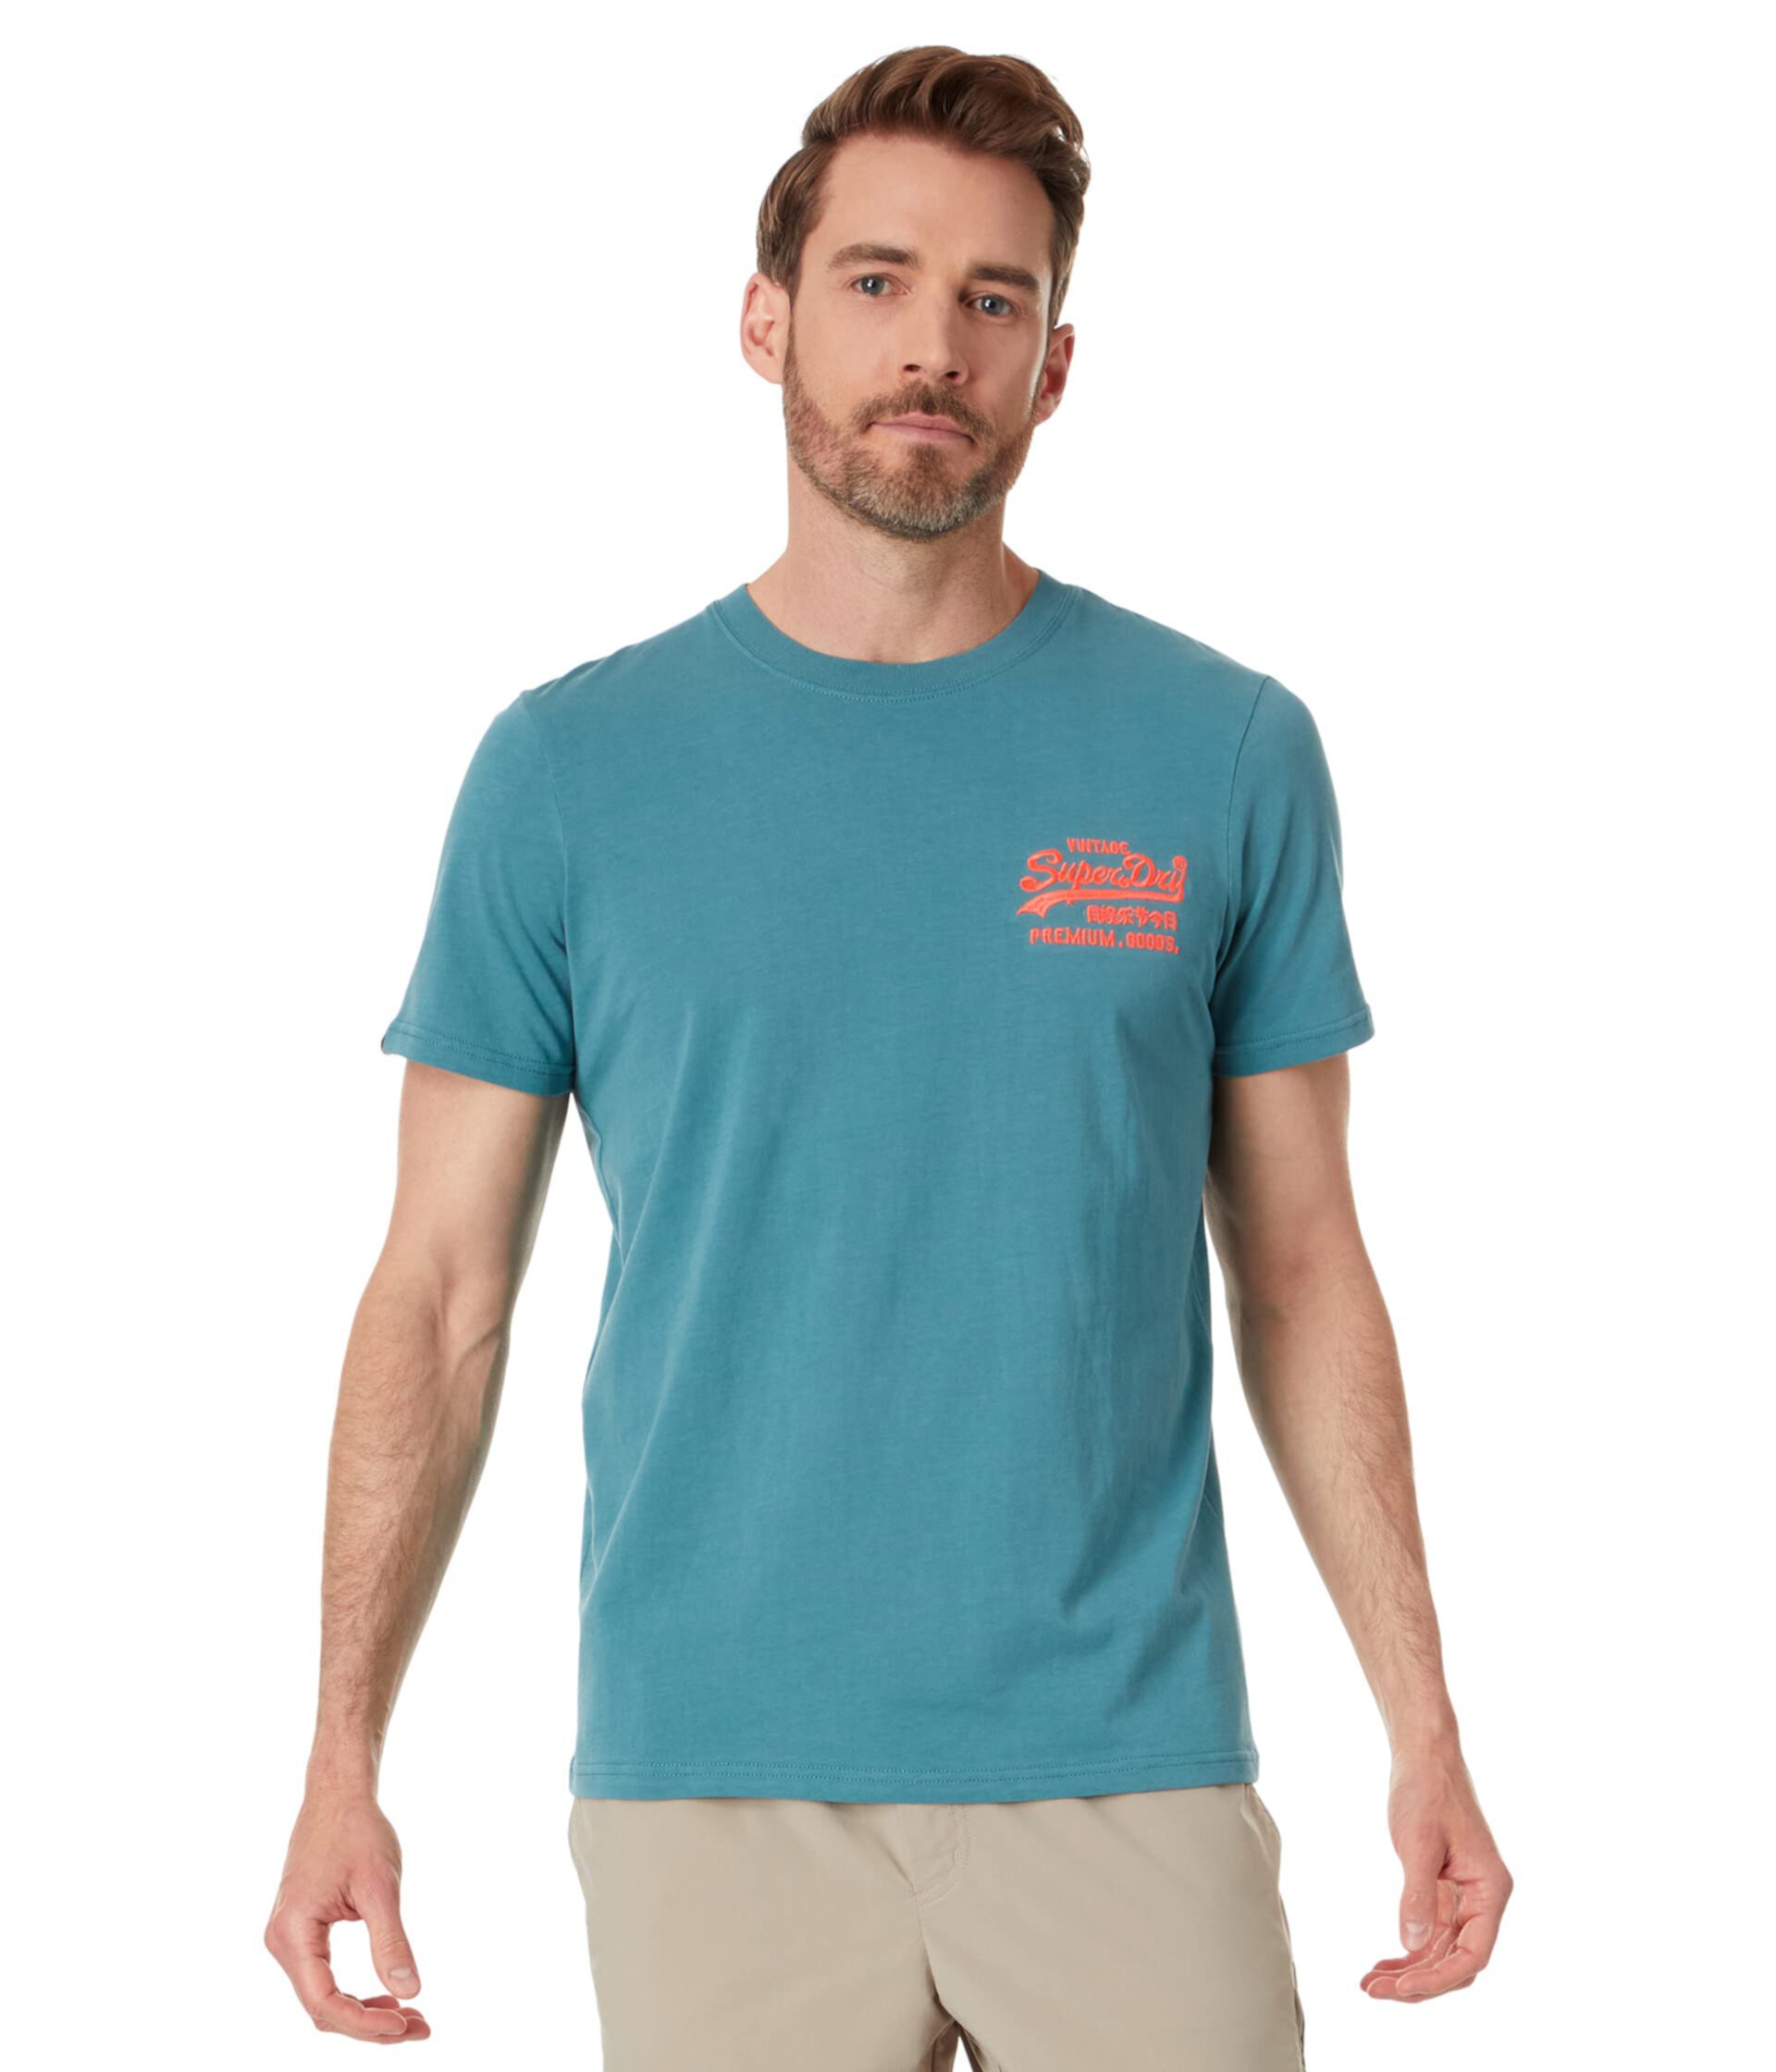 Неоновая футболка с винтажным логотипом Superdry